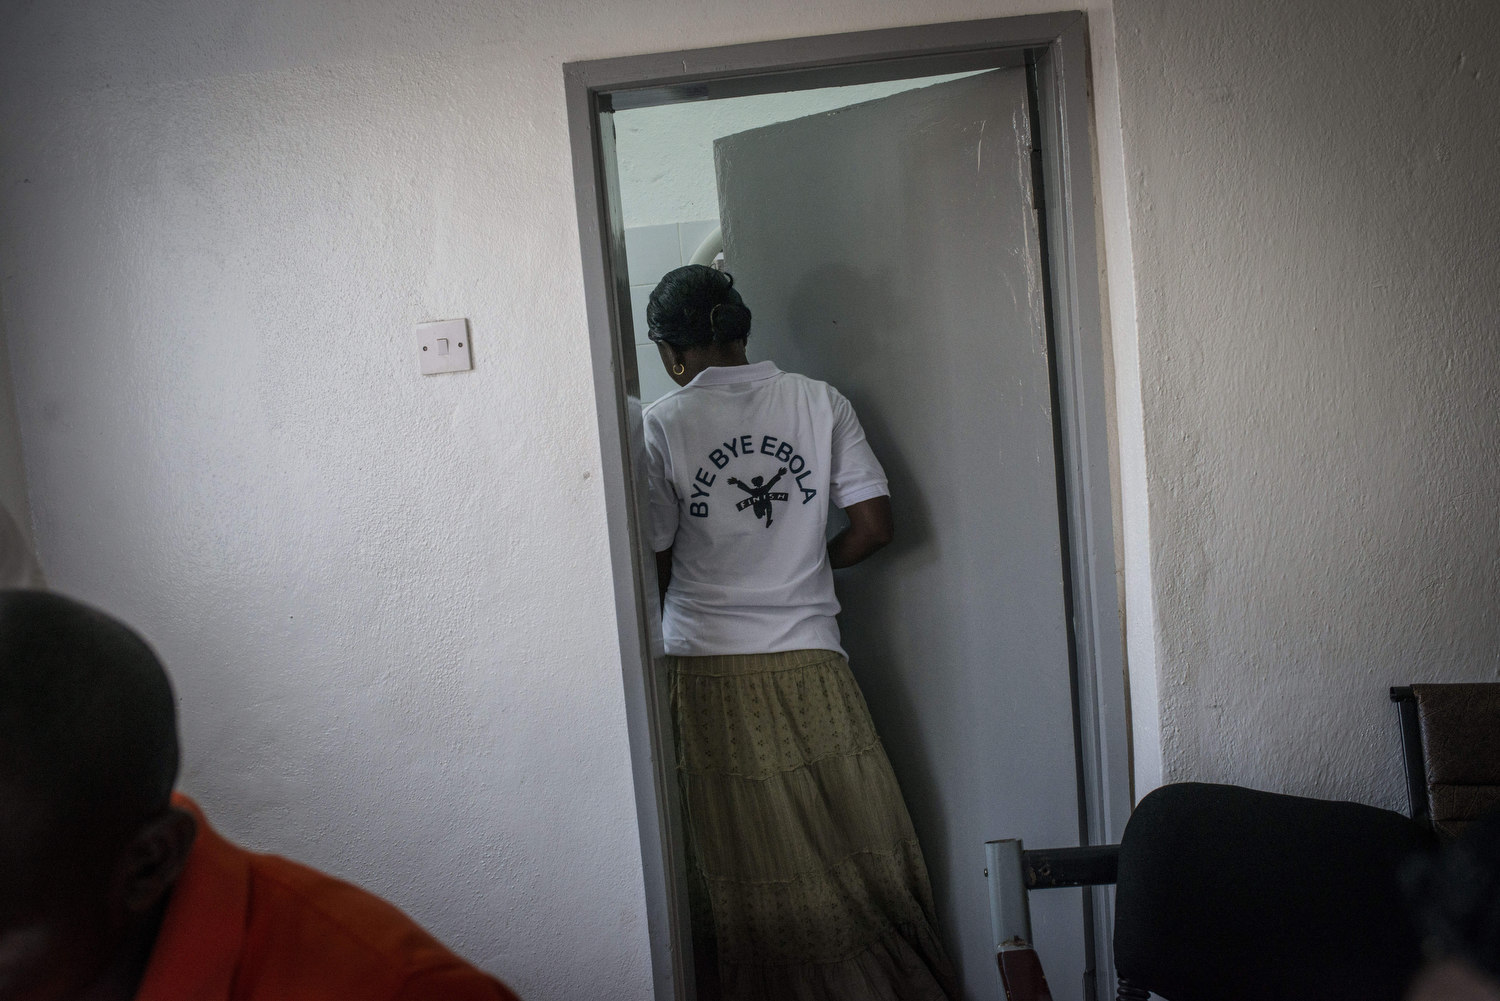  An attendant wears a shirt saying "Bye Bye Ebola". 